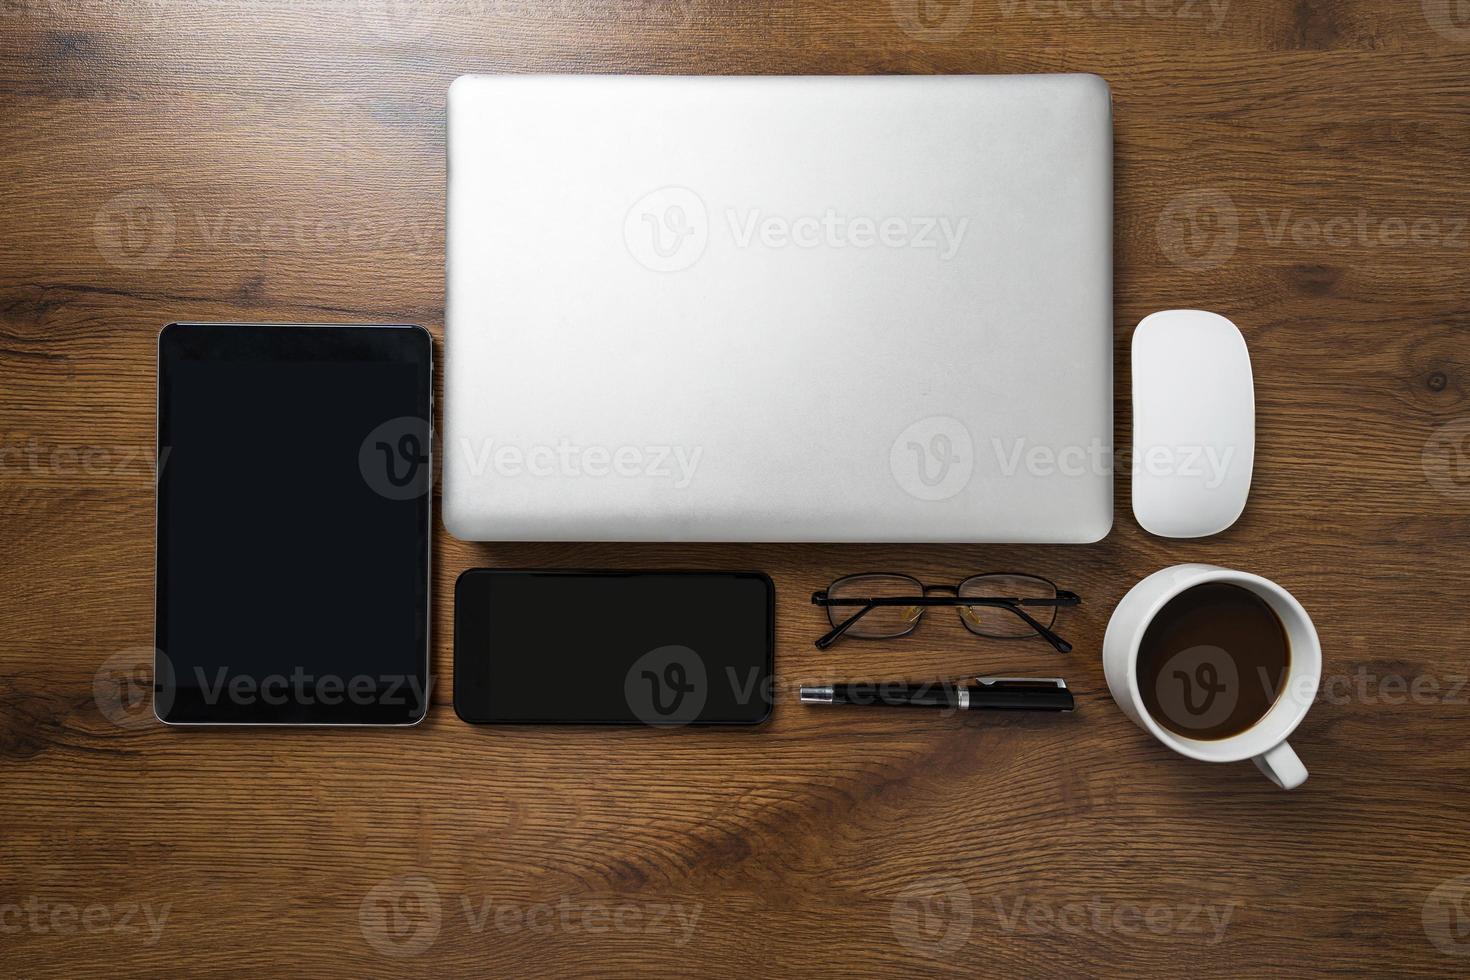 Draufsicht des Arbeitsbereichs mit Laptop, Smartphone, Tablet, Kaffeetasse, Gläsern und Stift auf Holztisch foto